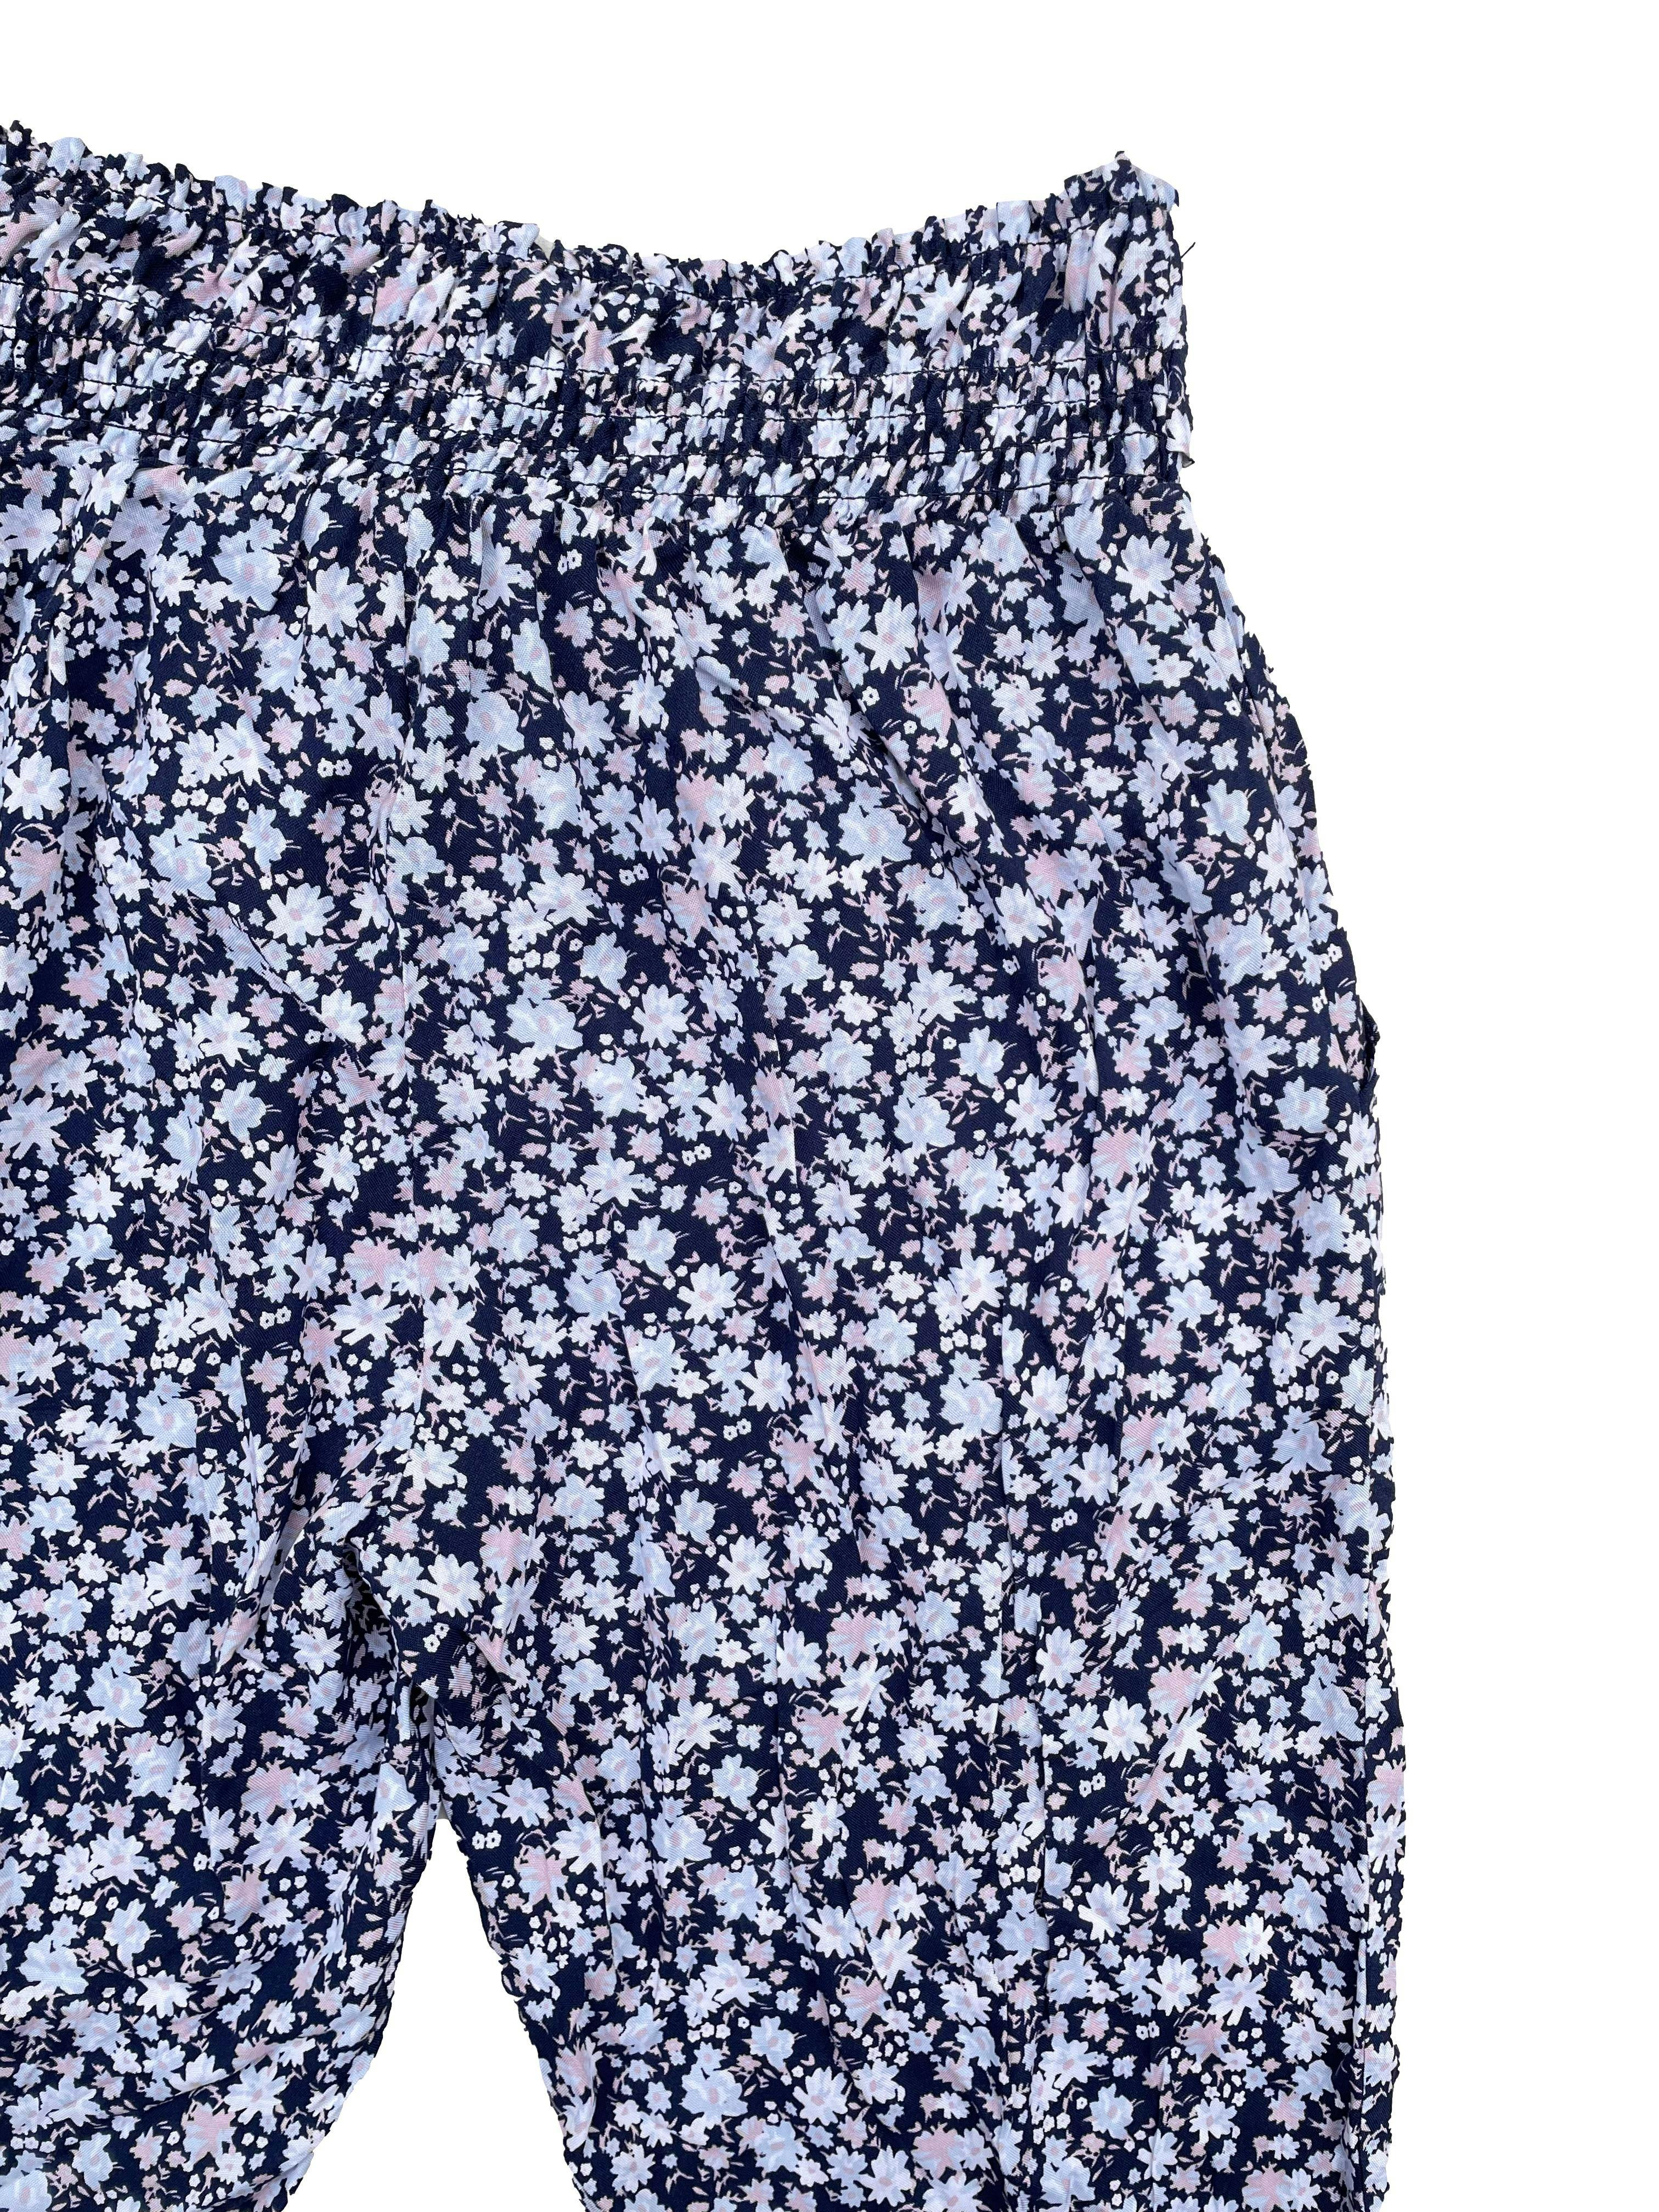 Pantalón Sybilla tela tipo chalis azul con flores, tiene bolsillos pretina panal de abeja, cinto y bolsillos. Cintura 70cm Largo 95cm. Nuevo con etiqueta